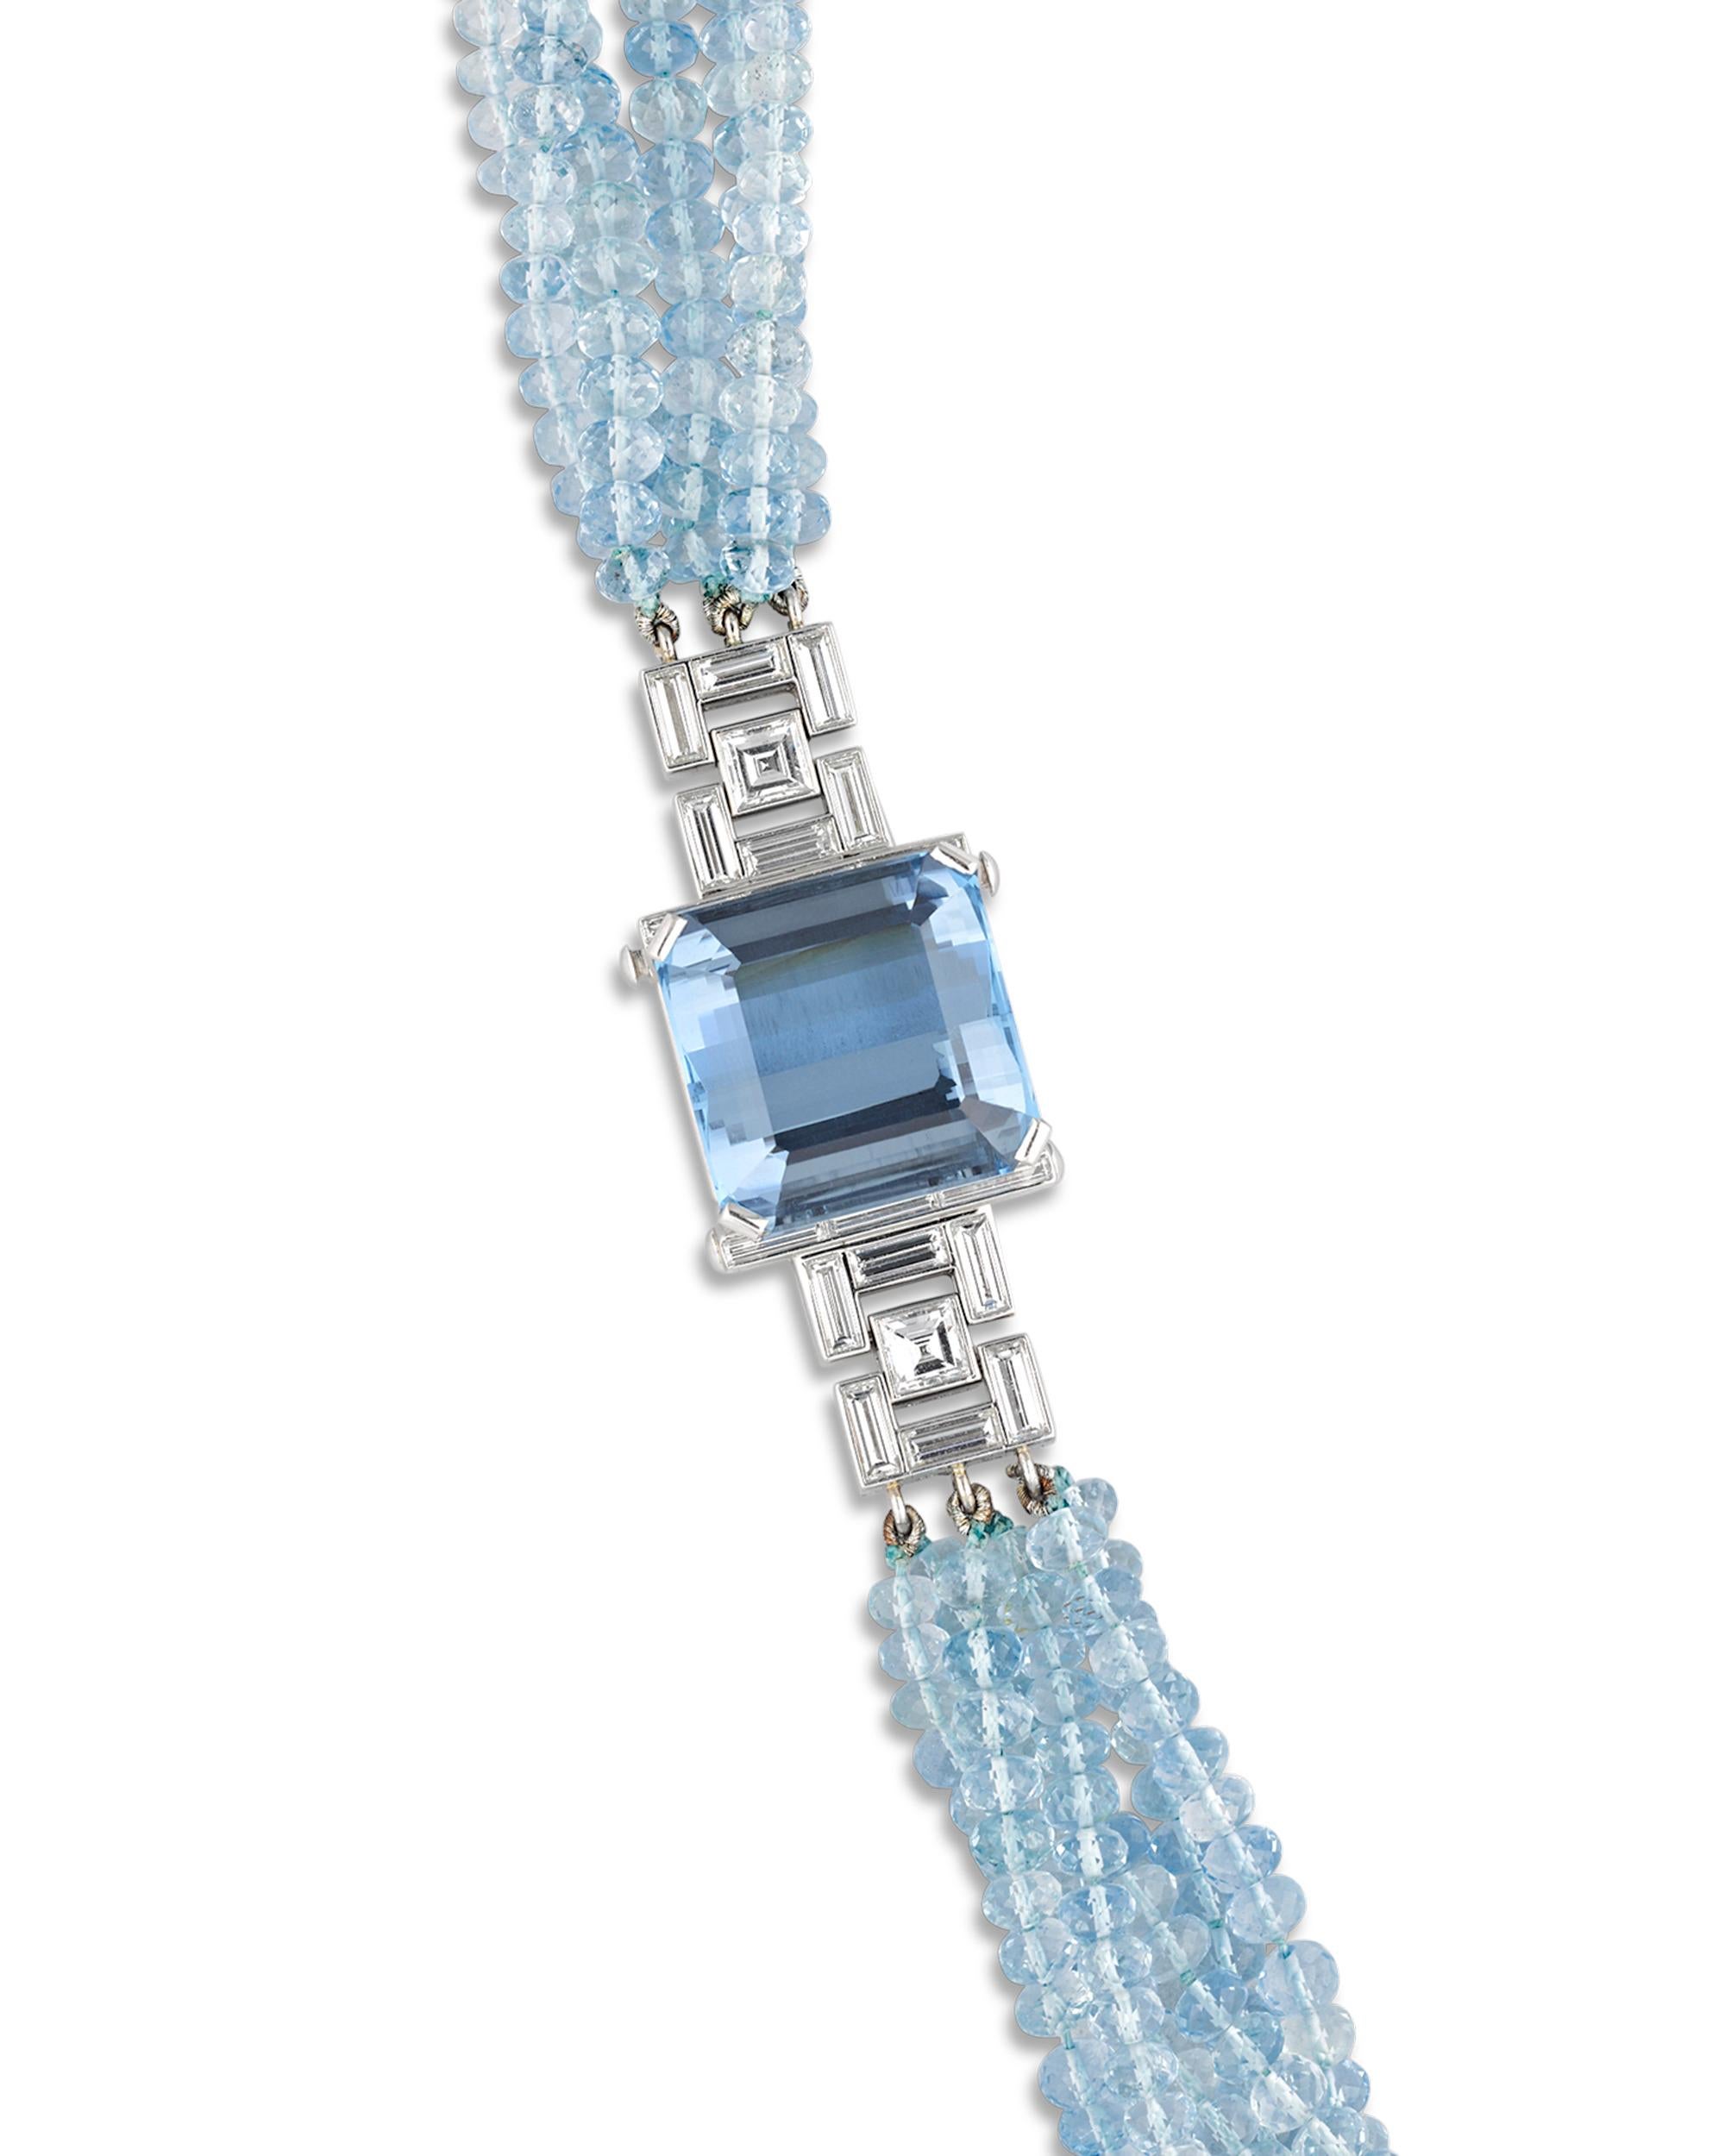 tiffany aquamarine necklace